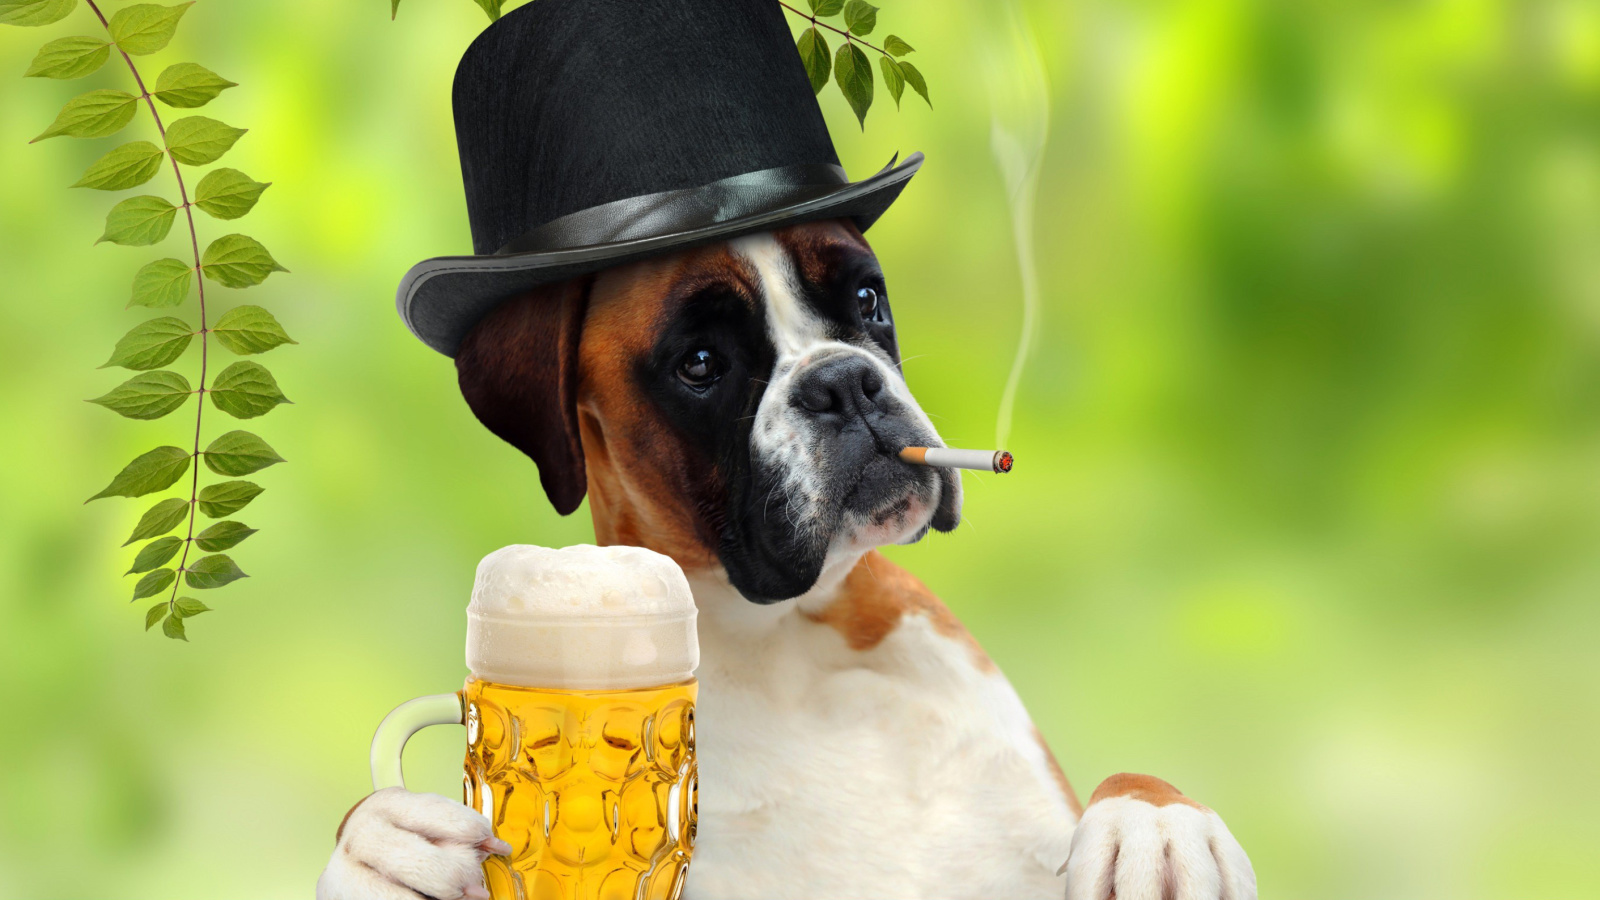 Обои Dog drinking beer 1600x900